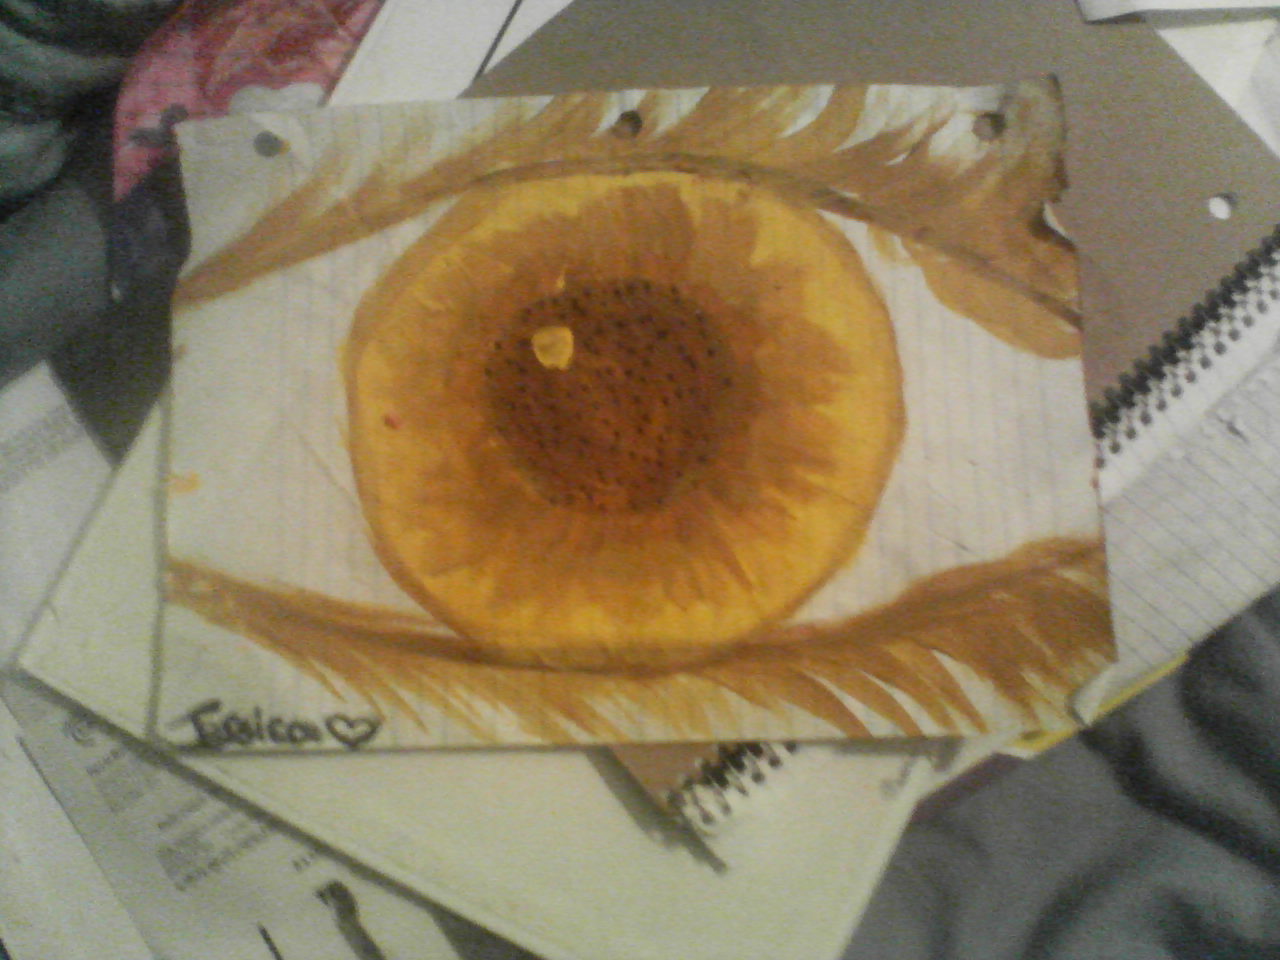 FACR: Sunflower eye.